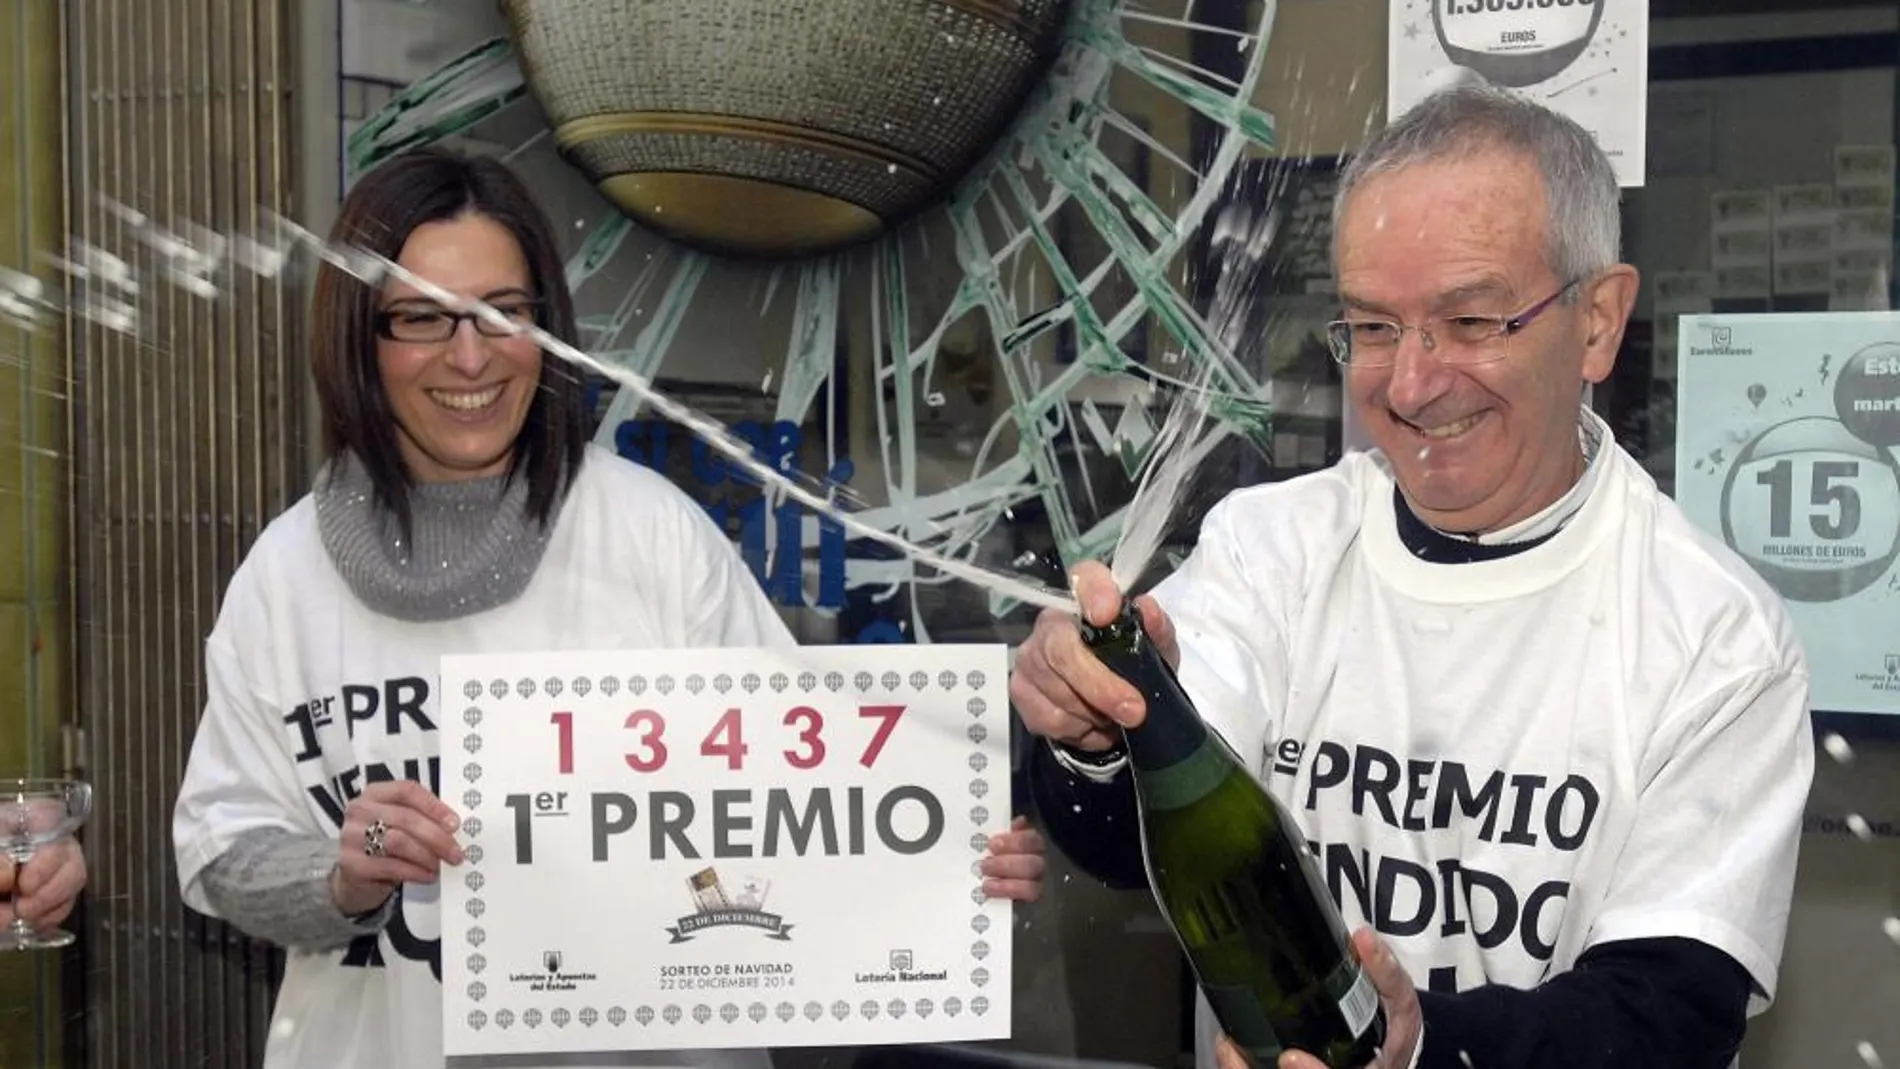 Carlos Manso, dueño de la Administración de Lotería de Boñar (León) celebra el primer premio de la Lotería de Navidad, 13.437